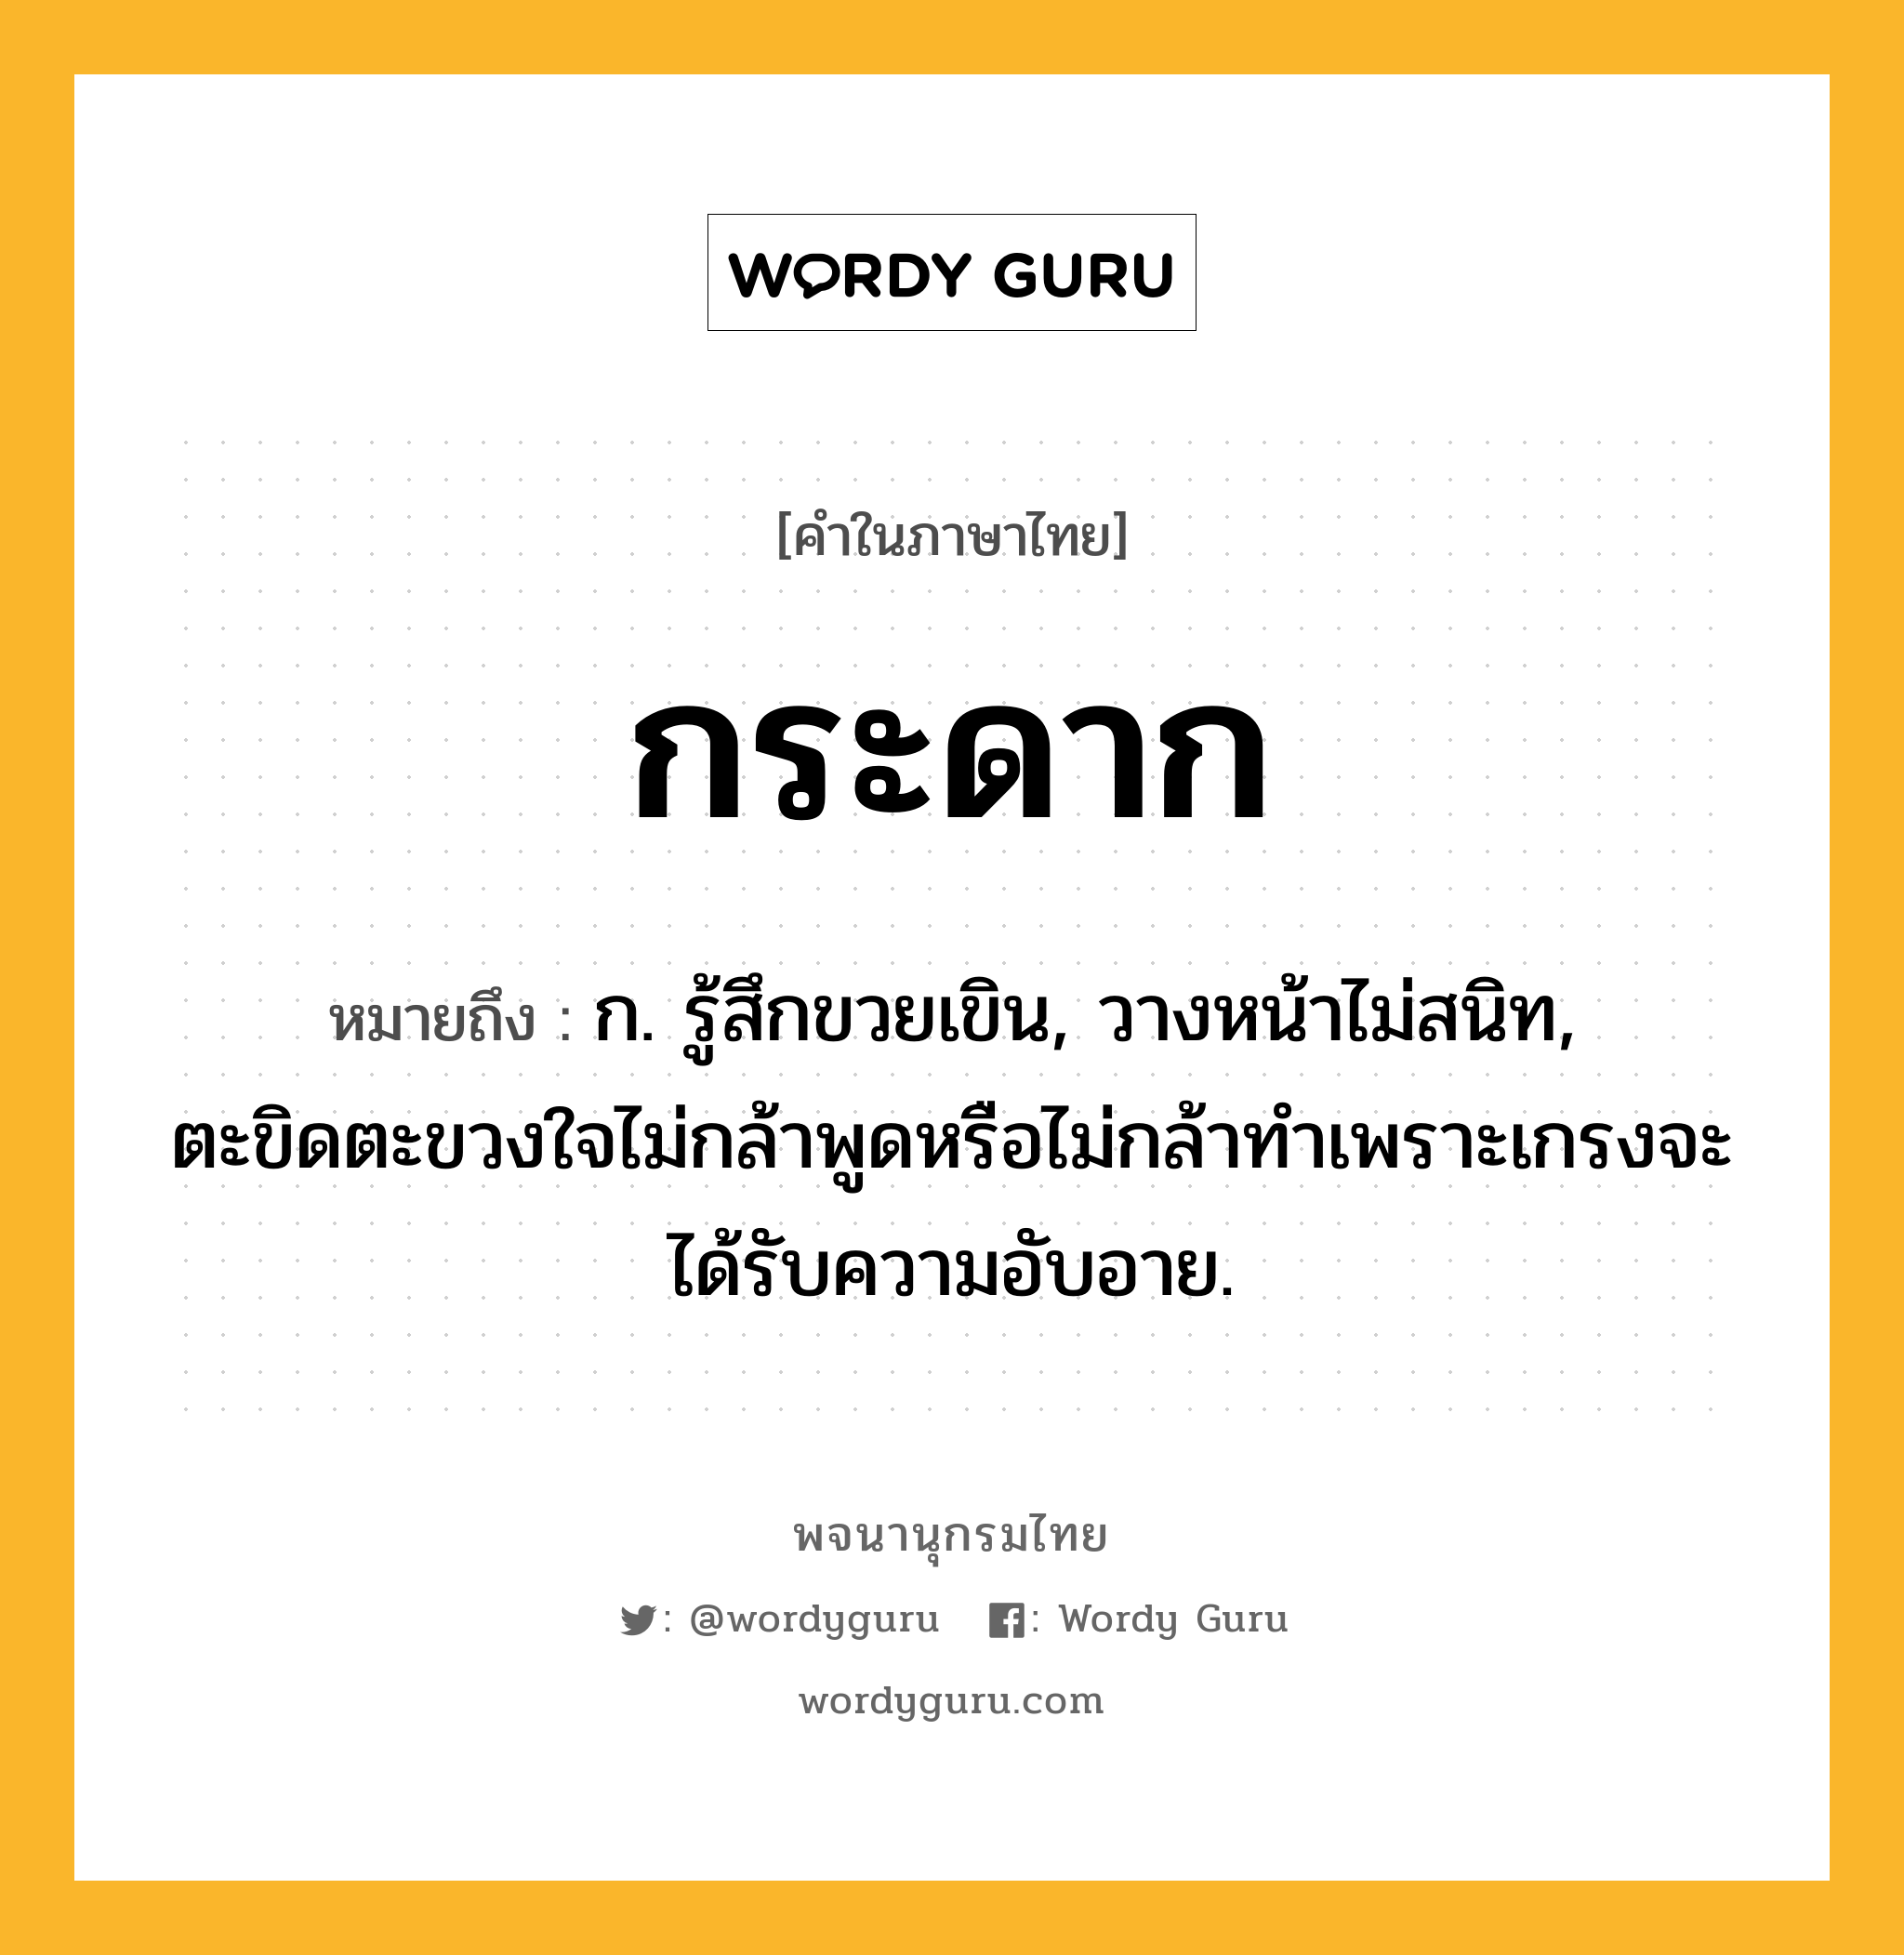 กระดาก ความหมาย หมายถึงอะไร?, คำในภาษาไทย กระดาก หมายถึง ก. รู้สึกขวยเขิน, วางหน้าไม่สนิท, ตะขิดตะขวงใจไม่กล้าพูดหรือไม่กล้าทําเพราะเกรงจะได้รับความอับอาย.